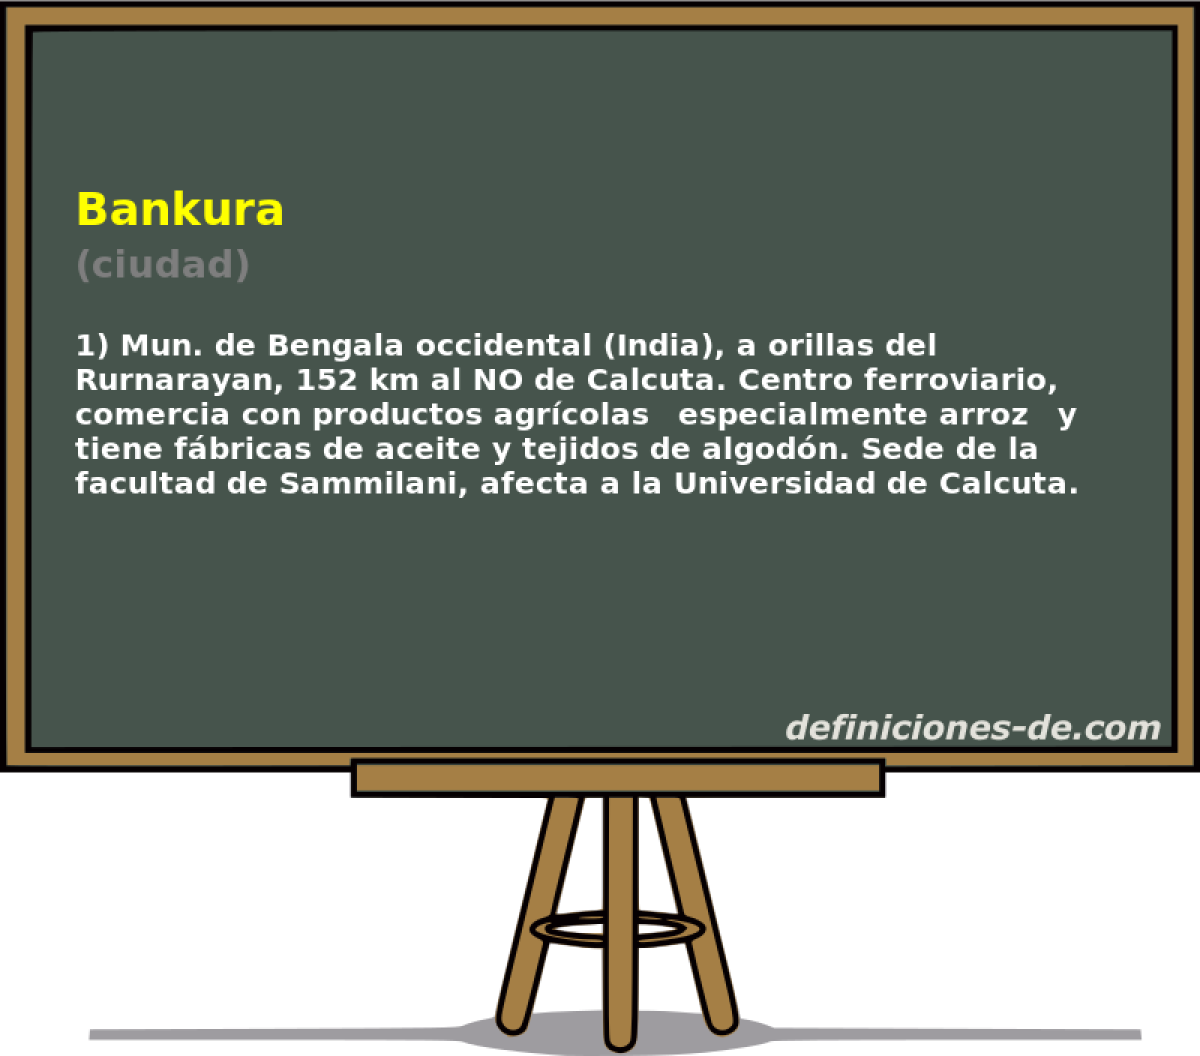 Bankura (ciudad)